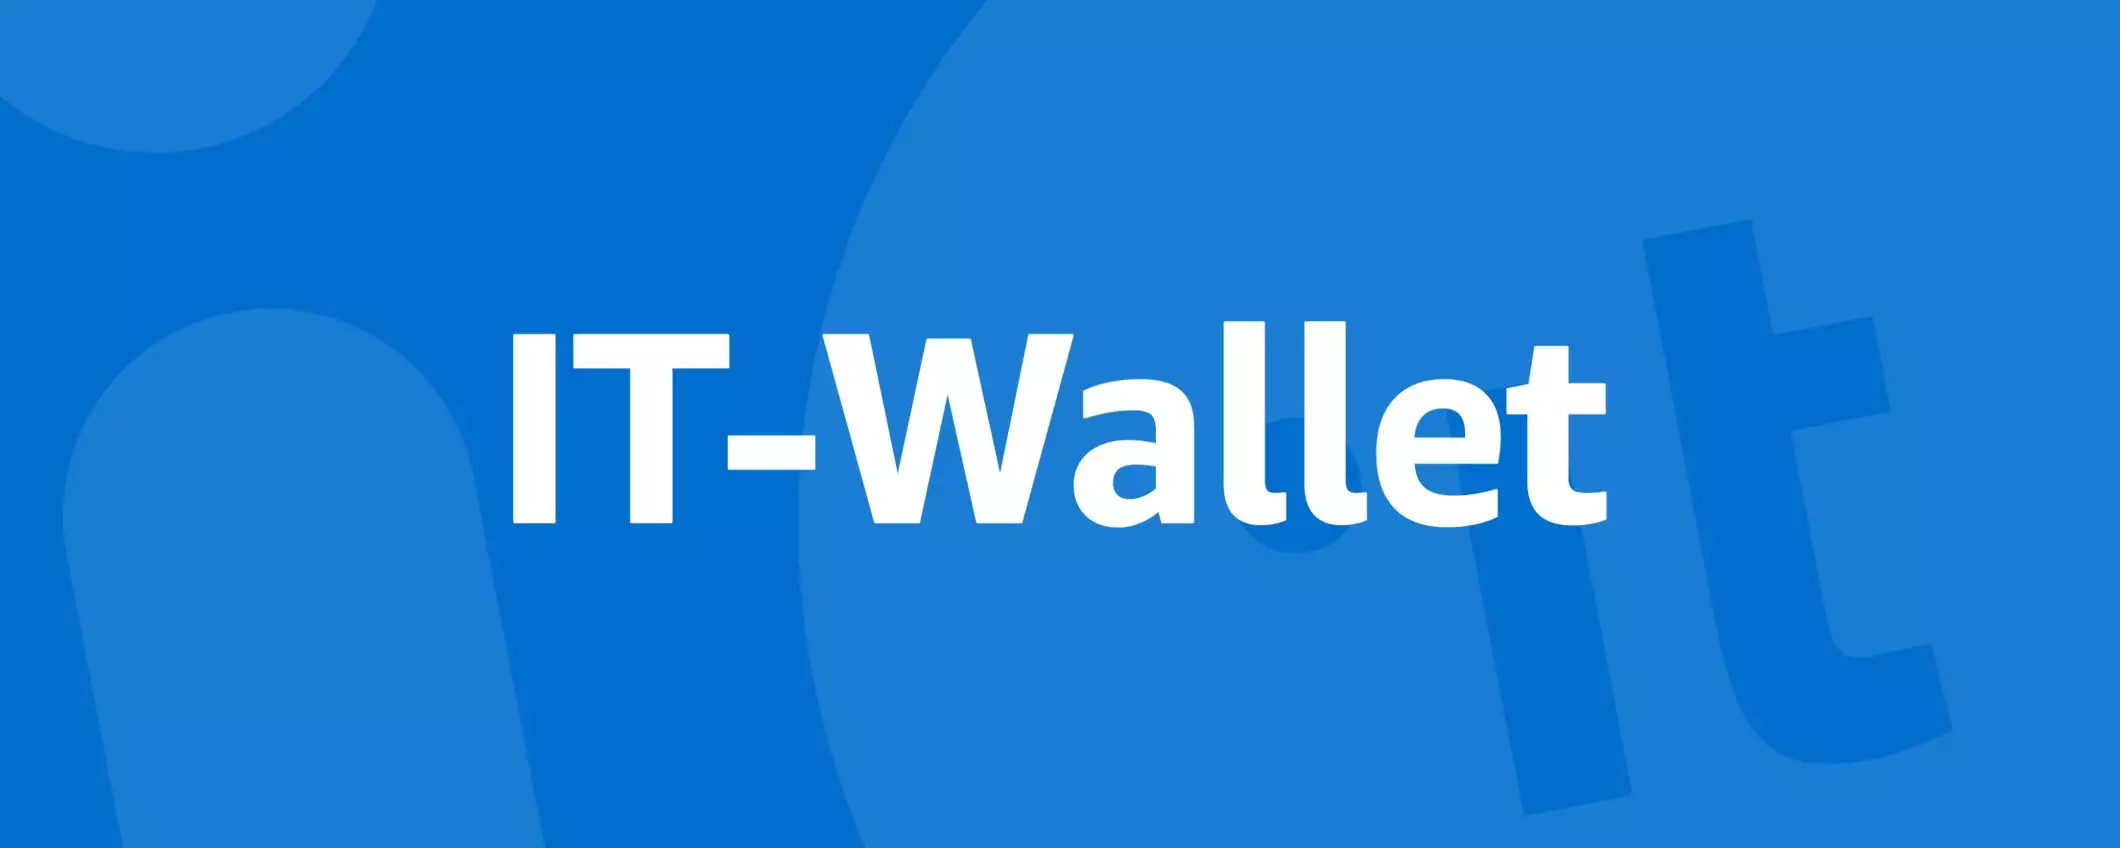 IT-Wallet nell'app IO: tempi più corti per il rollout?